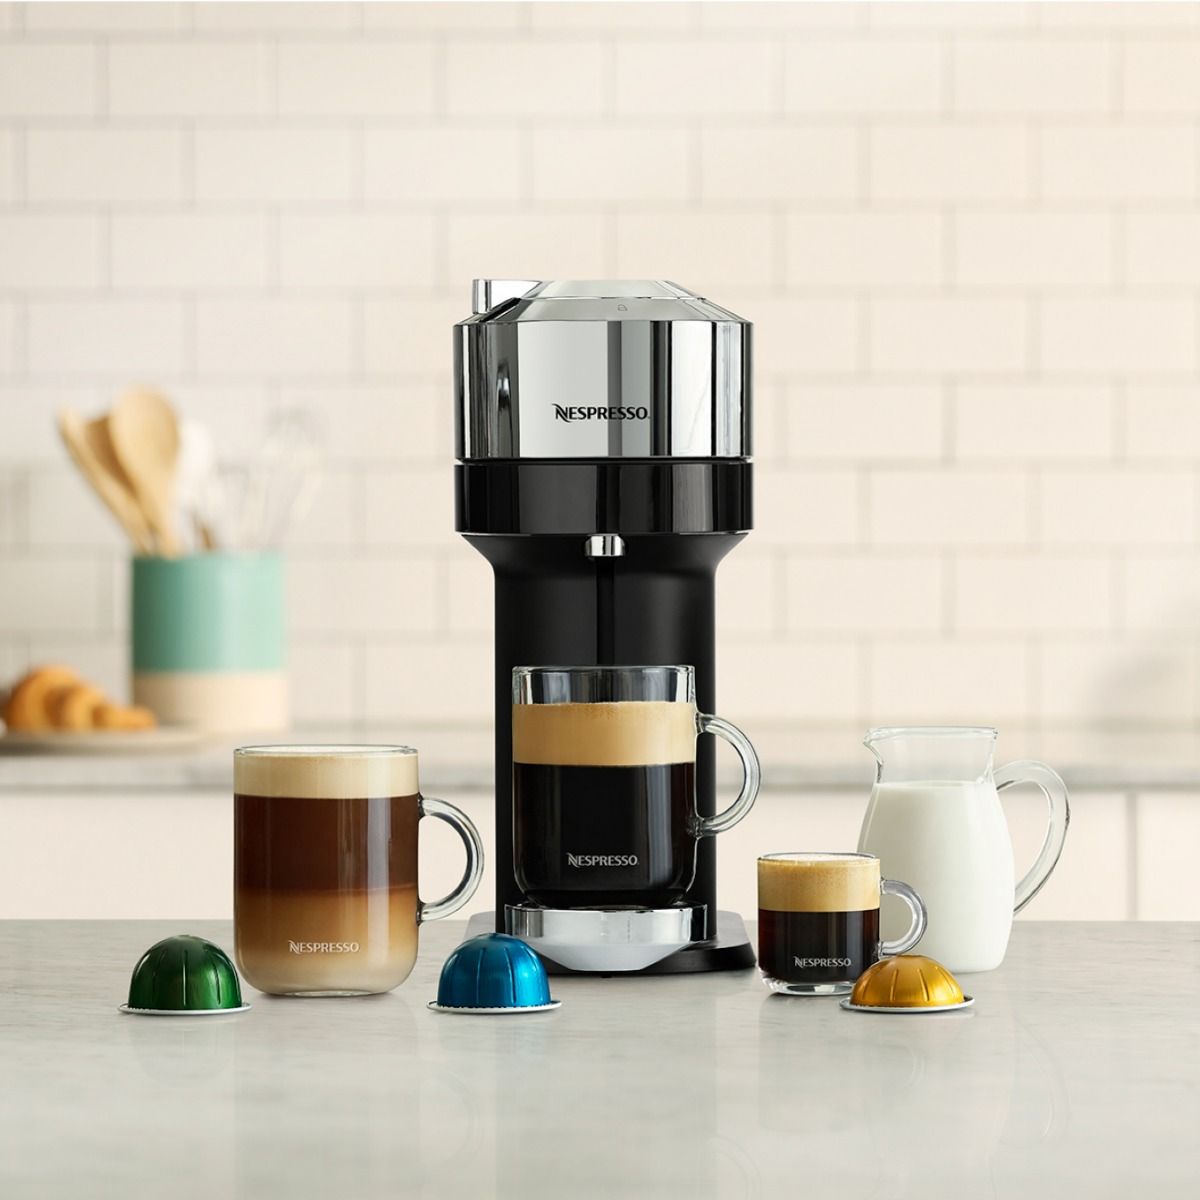 Machine à café et espresso à capsule Nespresso® Vertuo Next Deluxe par  De'longhi- Chrome pur